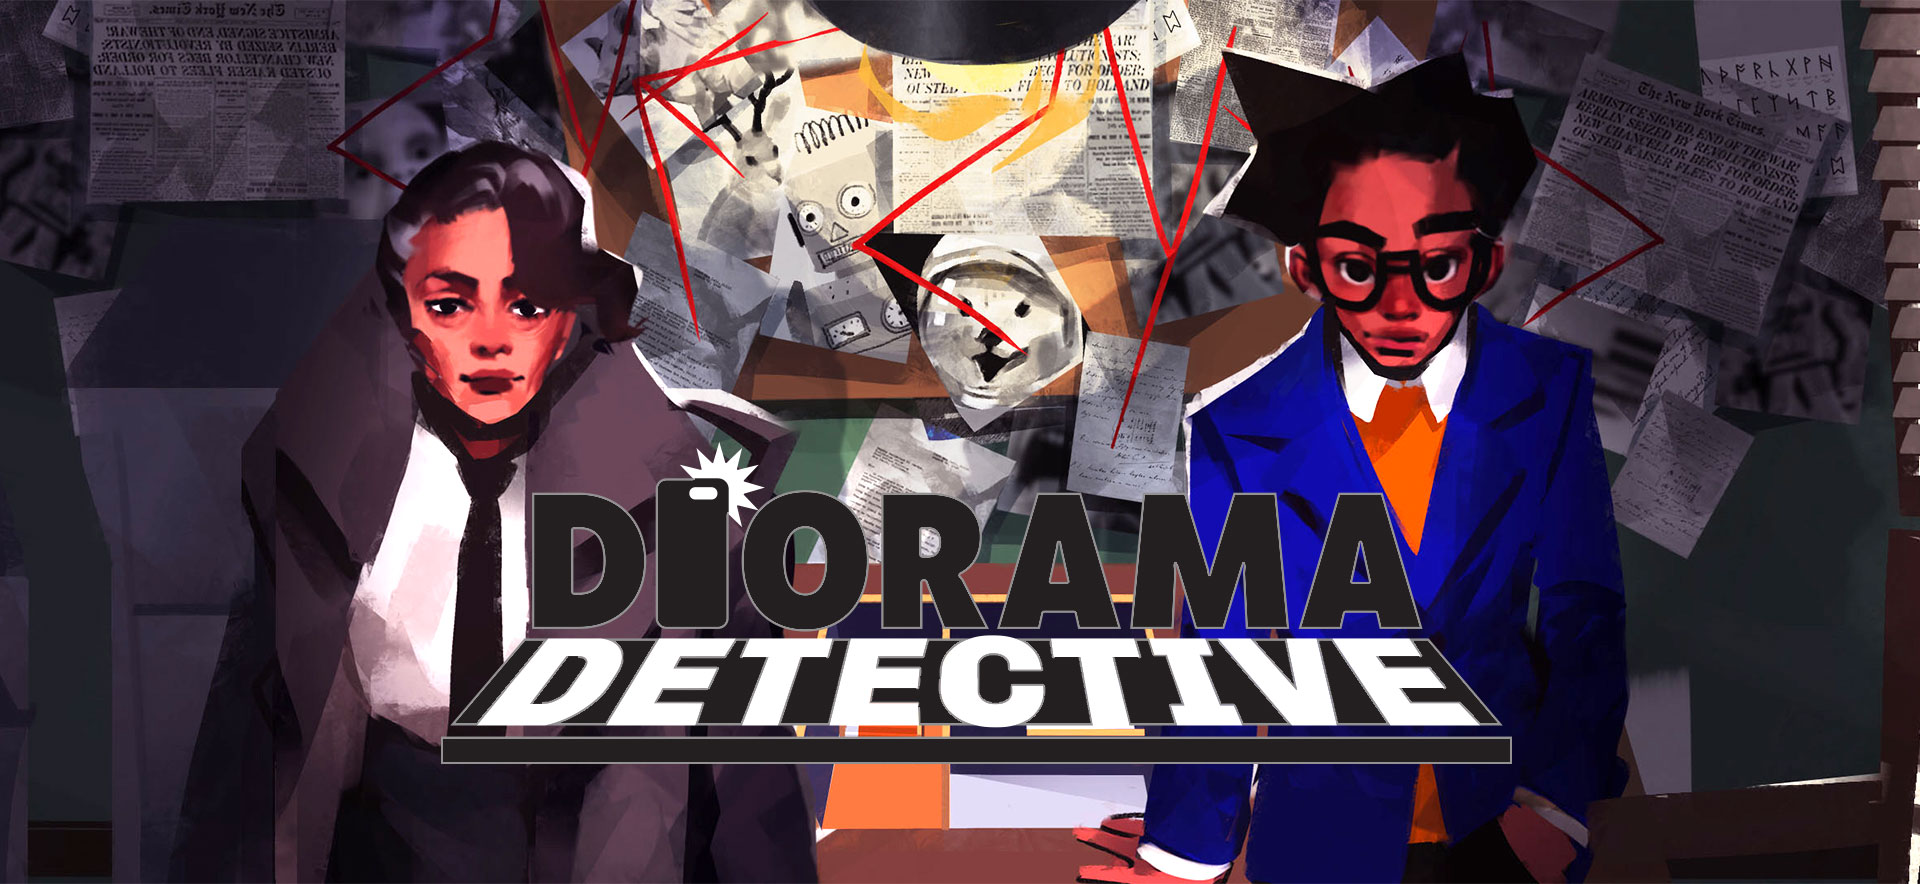 حل ألغاز منغمسة في "Diorama Detective" ، لعبة Quirky AR التي تبدأ الأسبوع المقبل